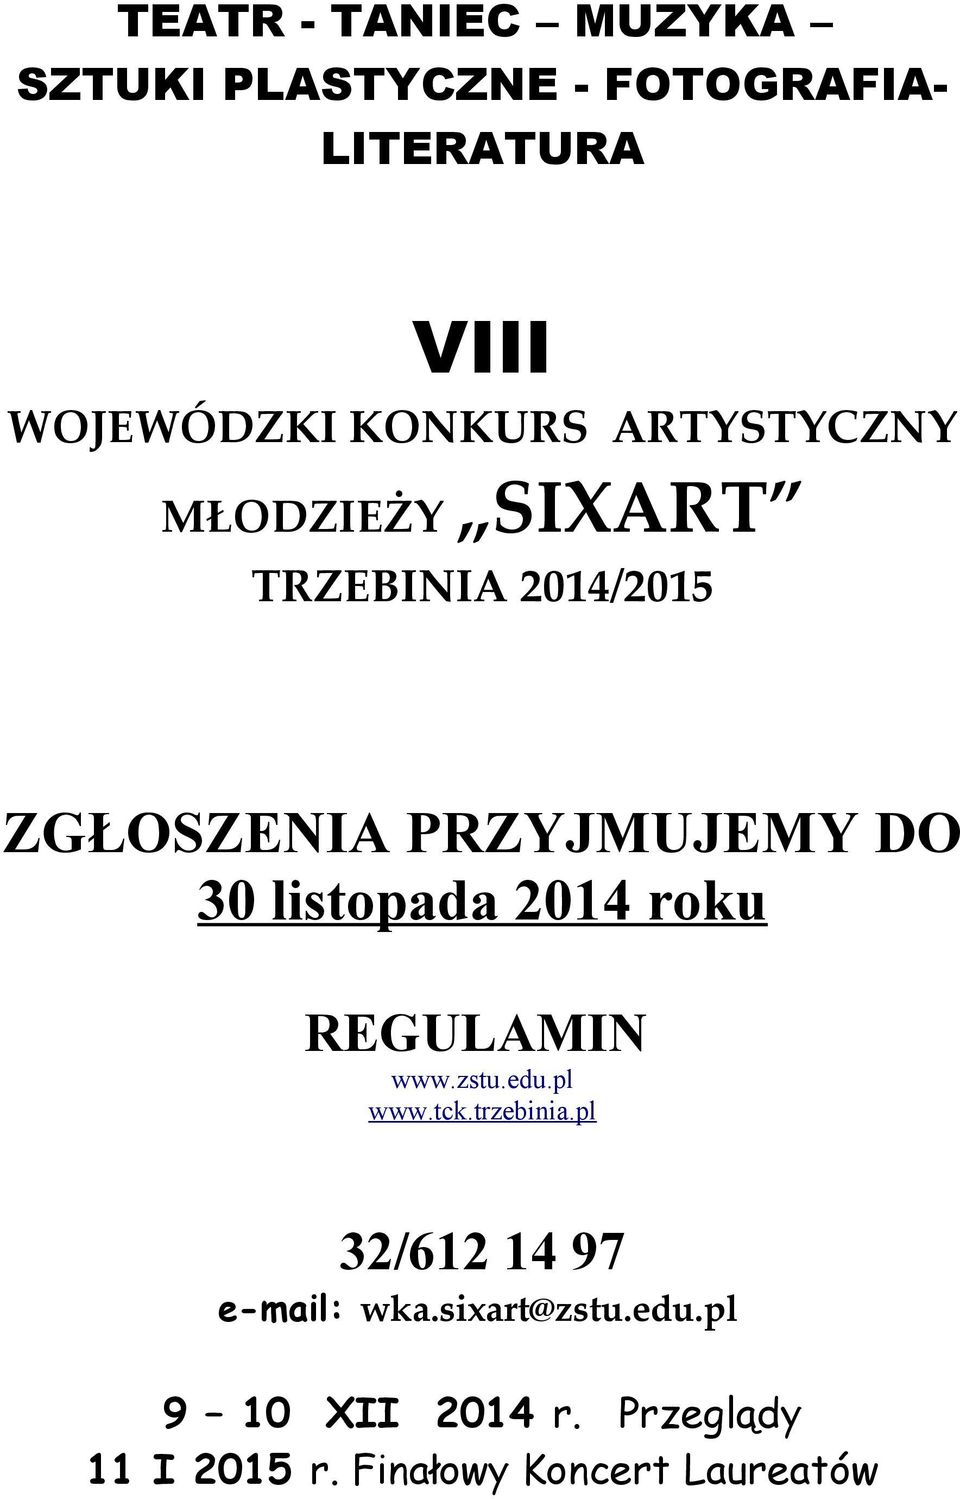 listopada 2014 roku REGULAMIN www.zstu.edu.pl www.tck.trzebinia.